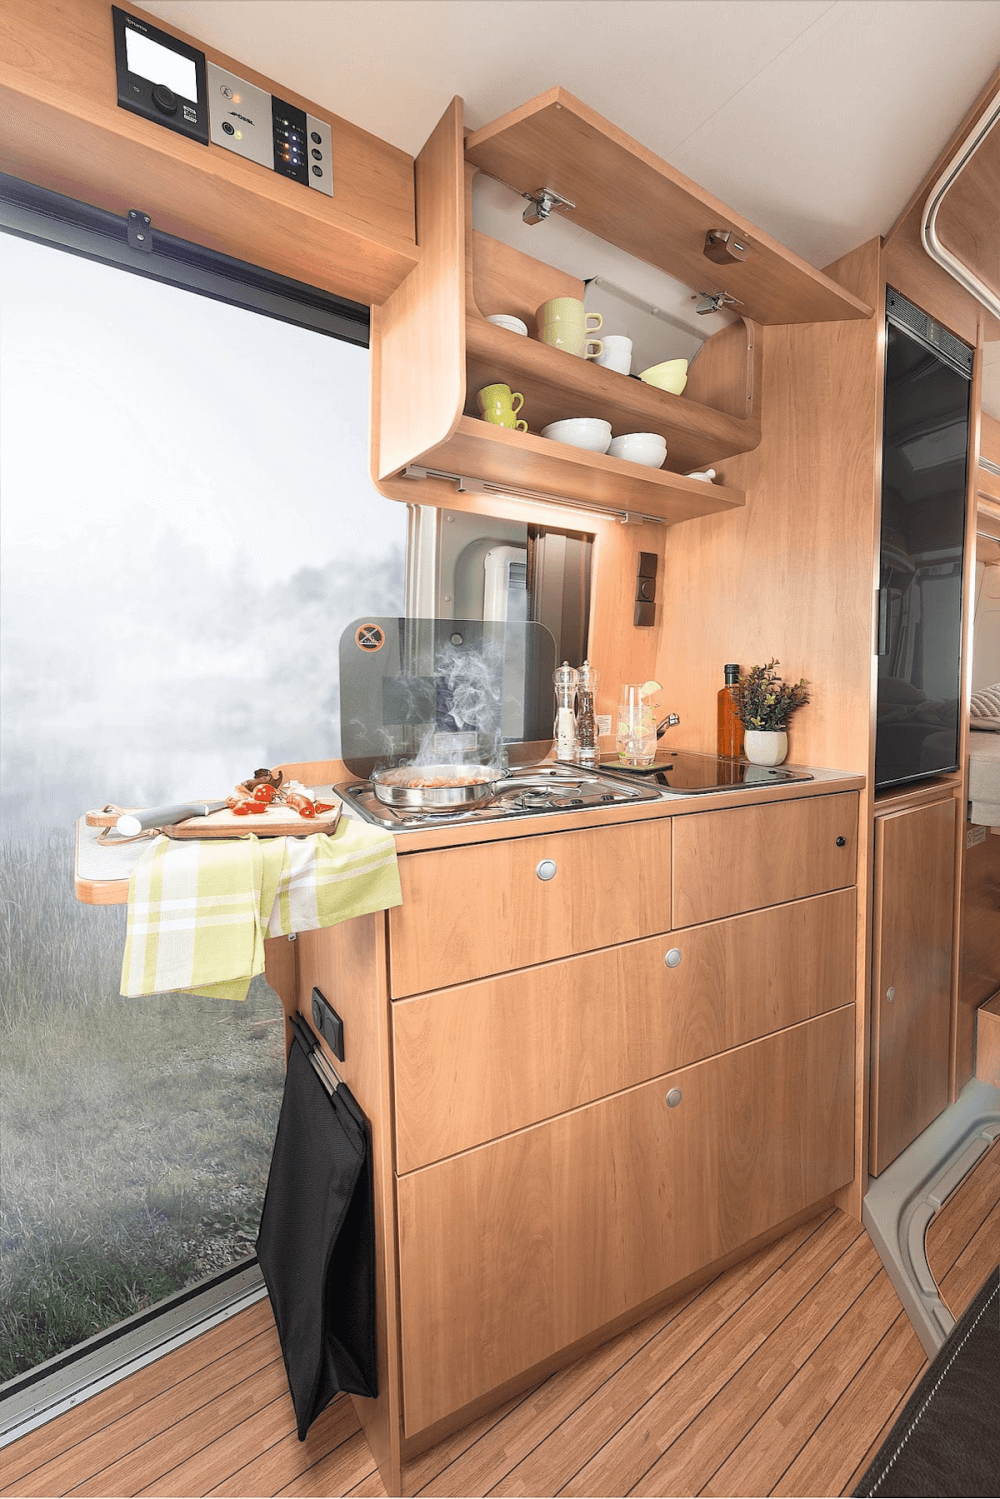 Pössl Roadcruiser 640 (Fiat) Kastenwagen 2021 Küche